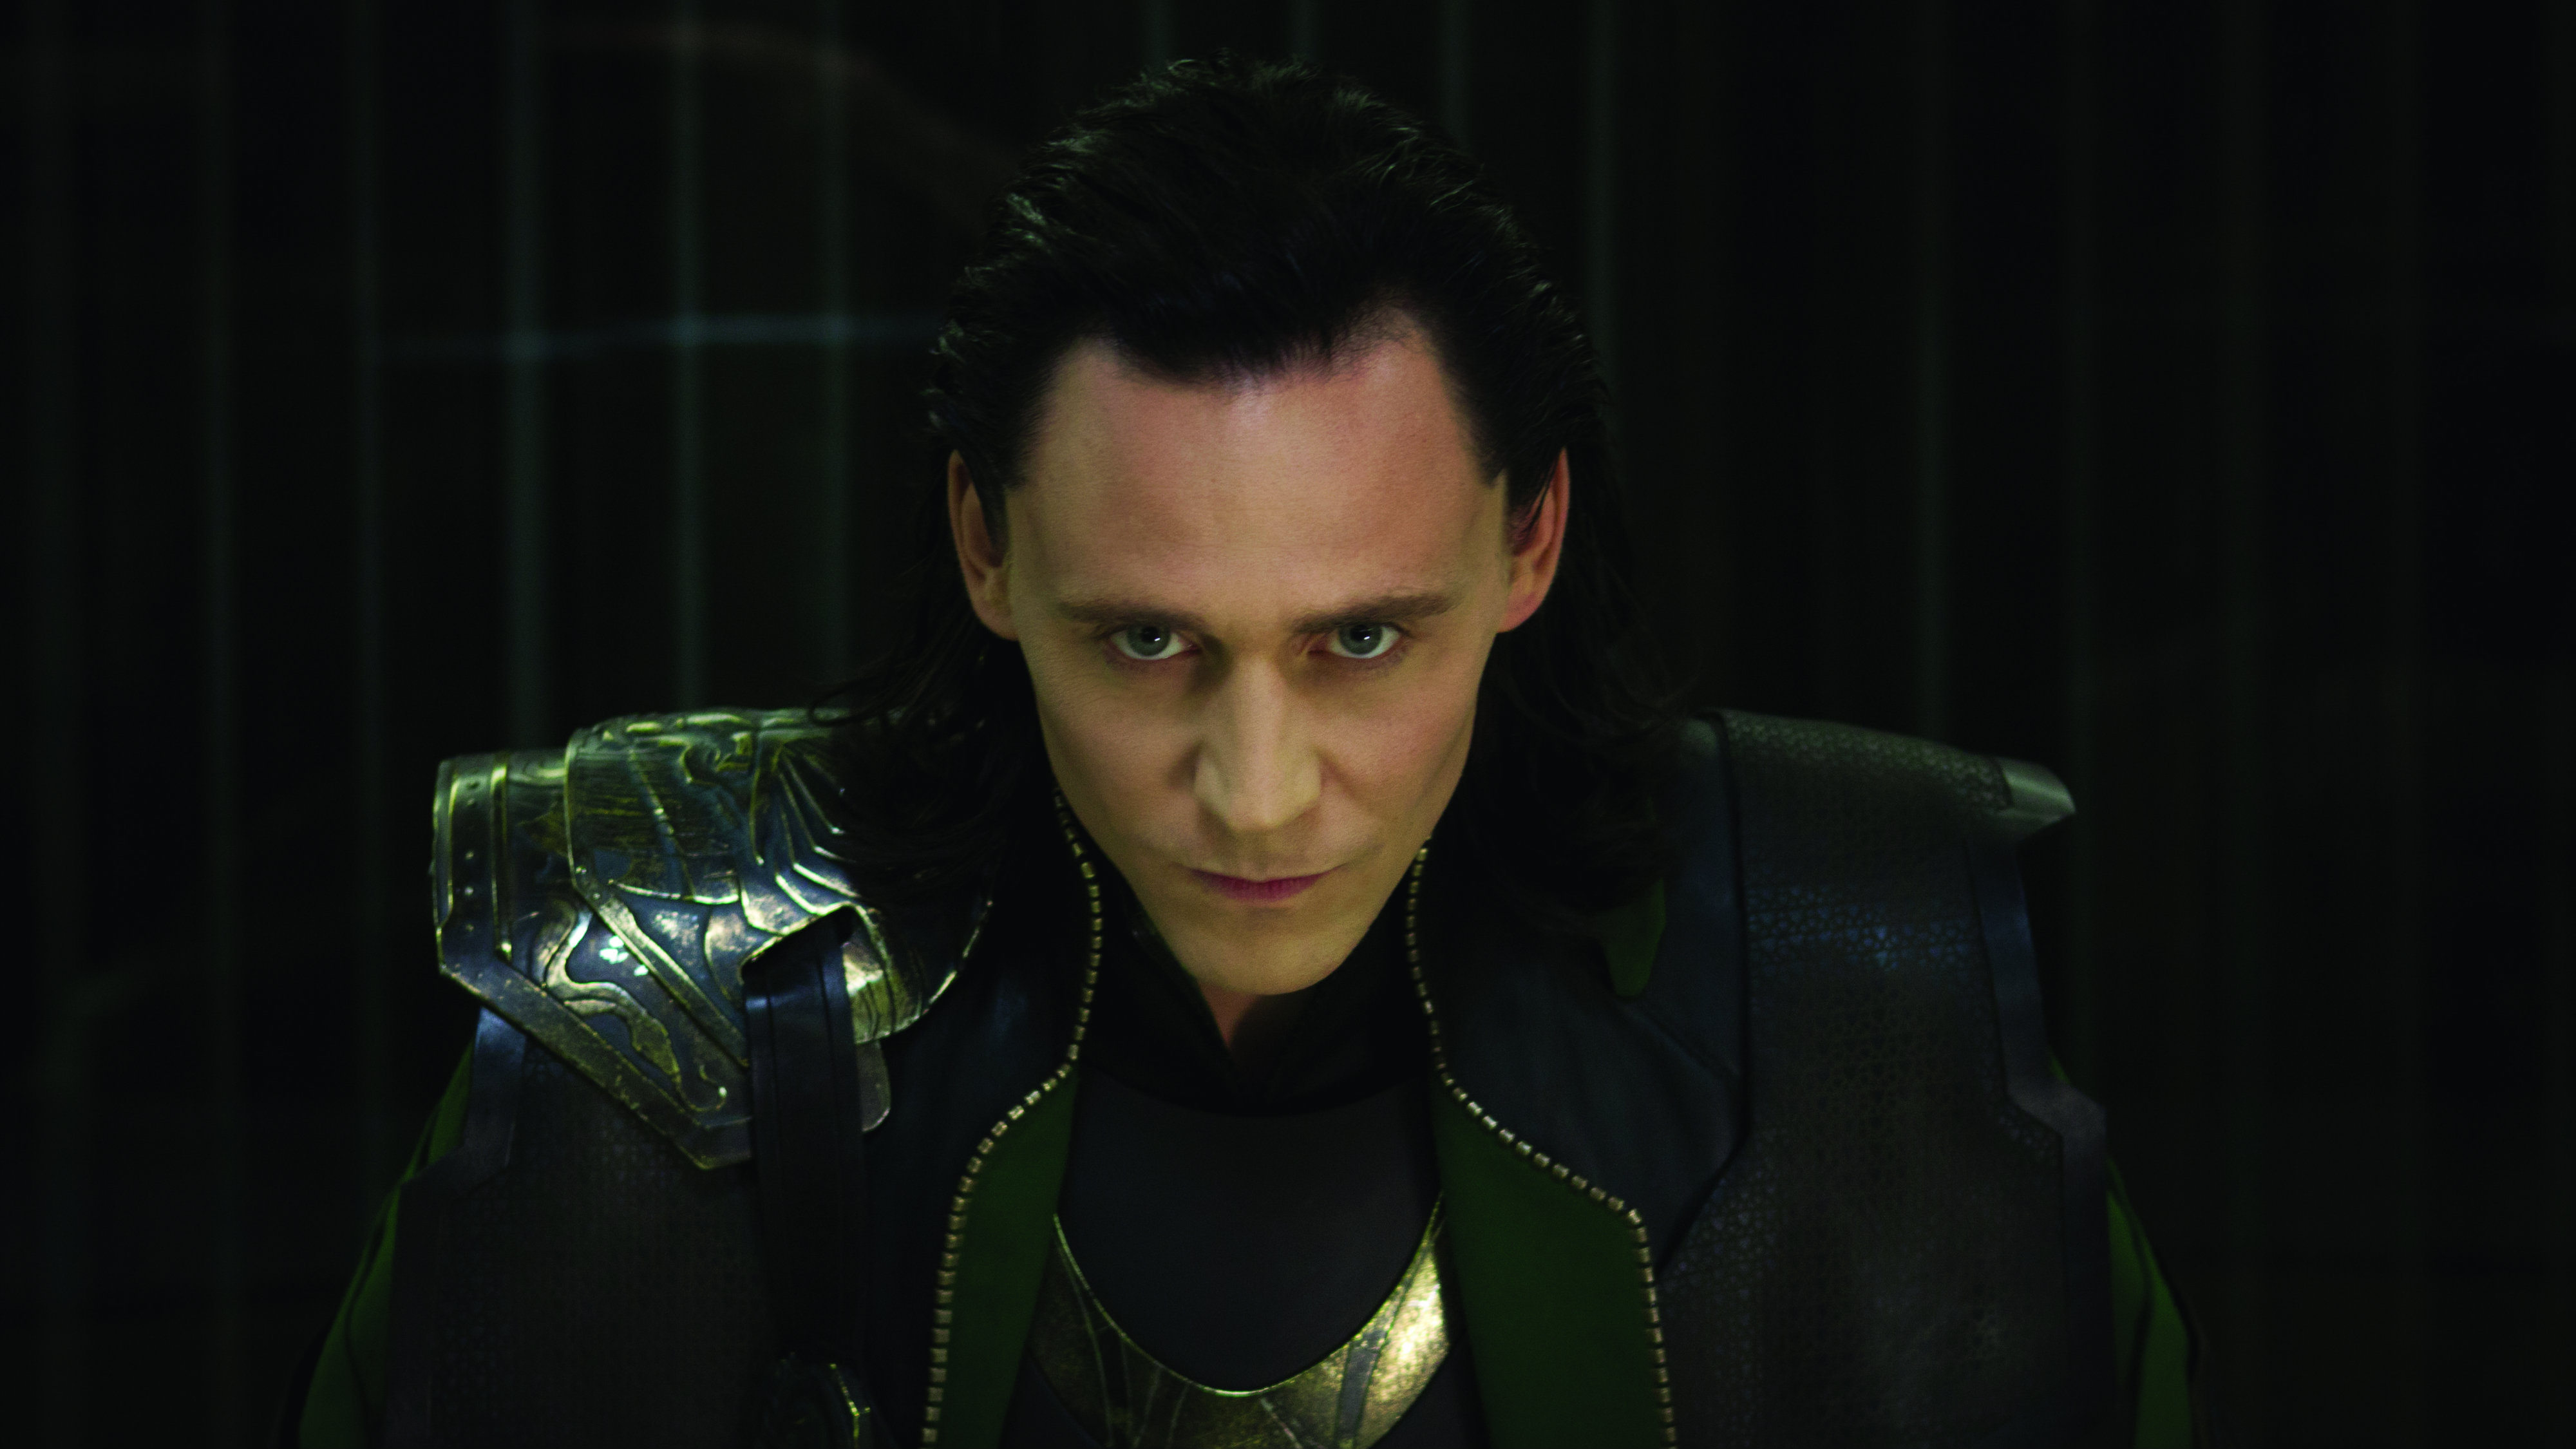 Tom Hiddleston in 'The Avengers'